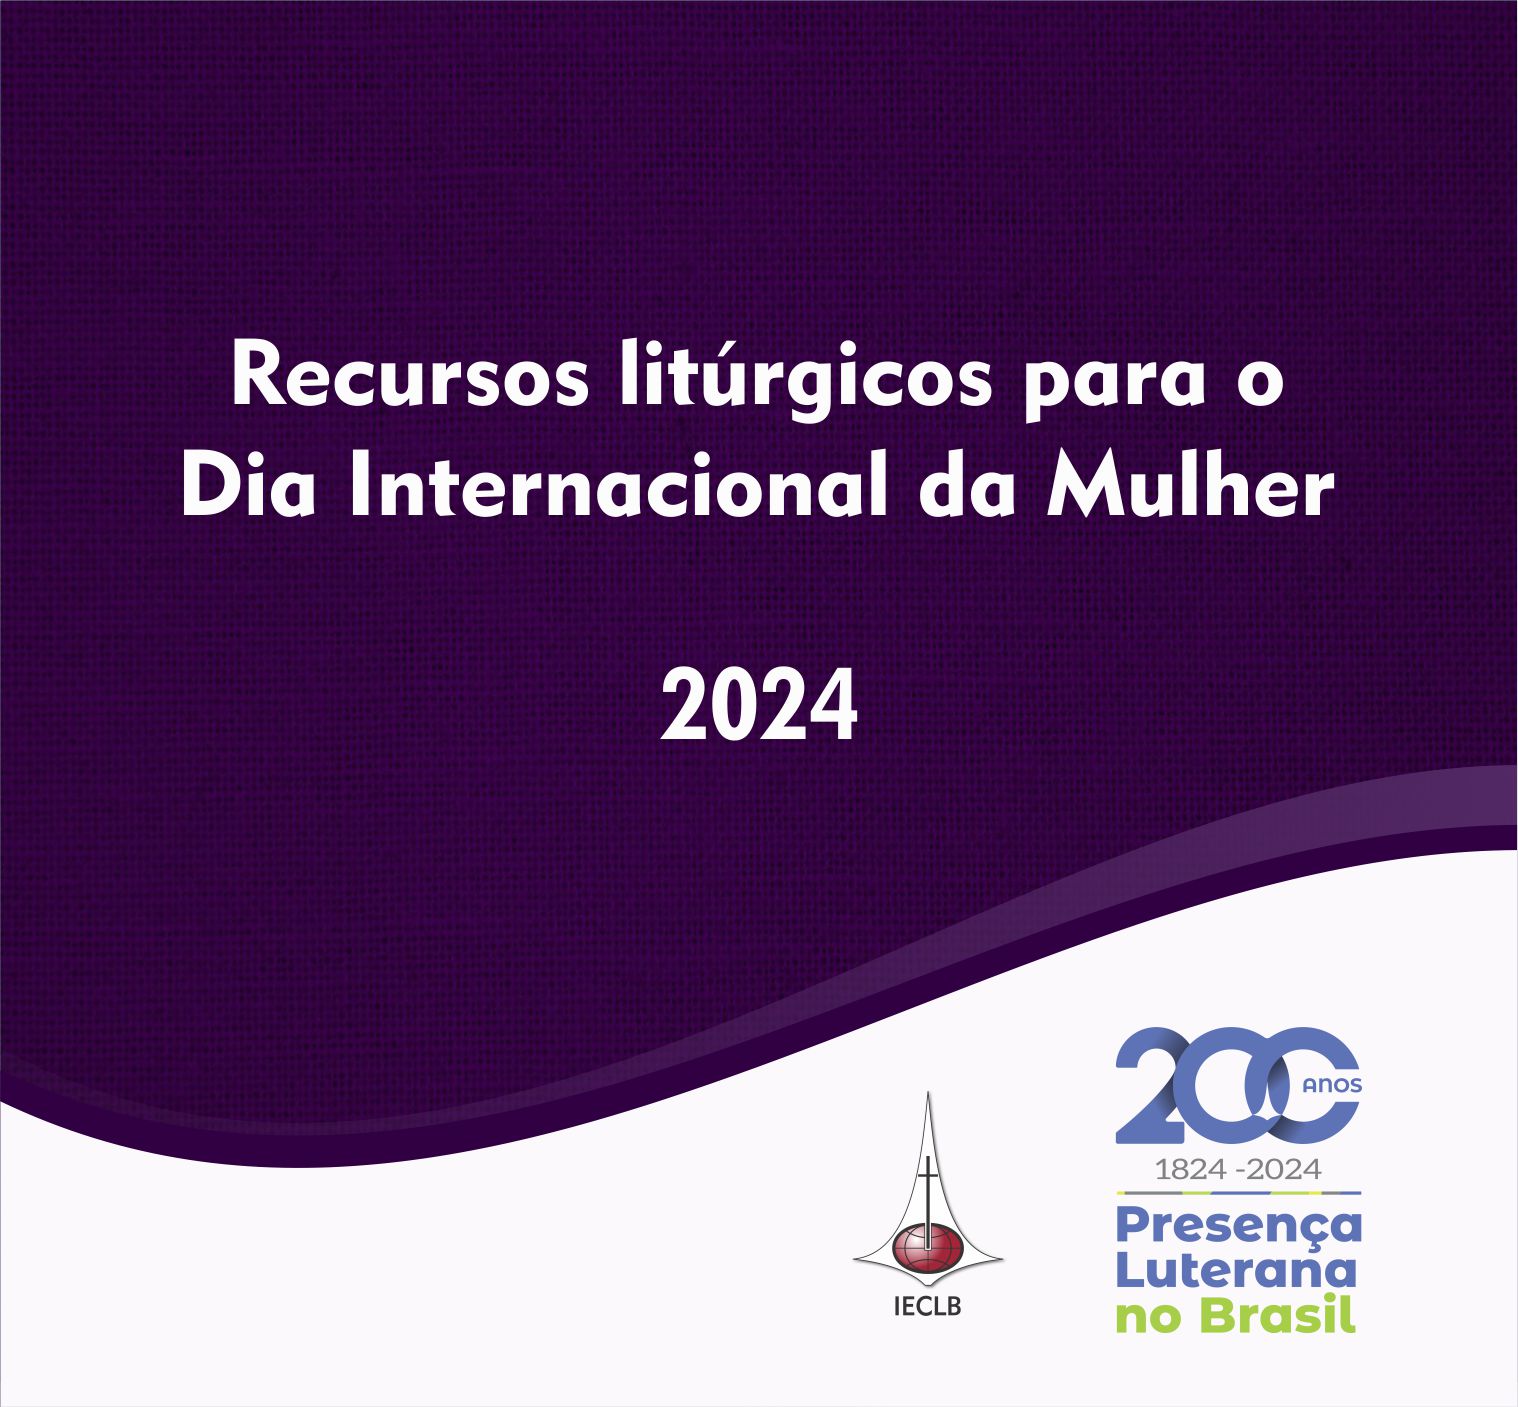 Recursos litúrgicos para o Dia da Internacional Mulher 2024